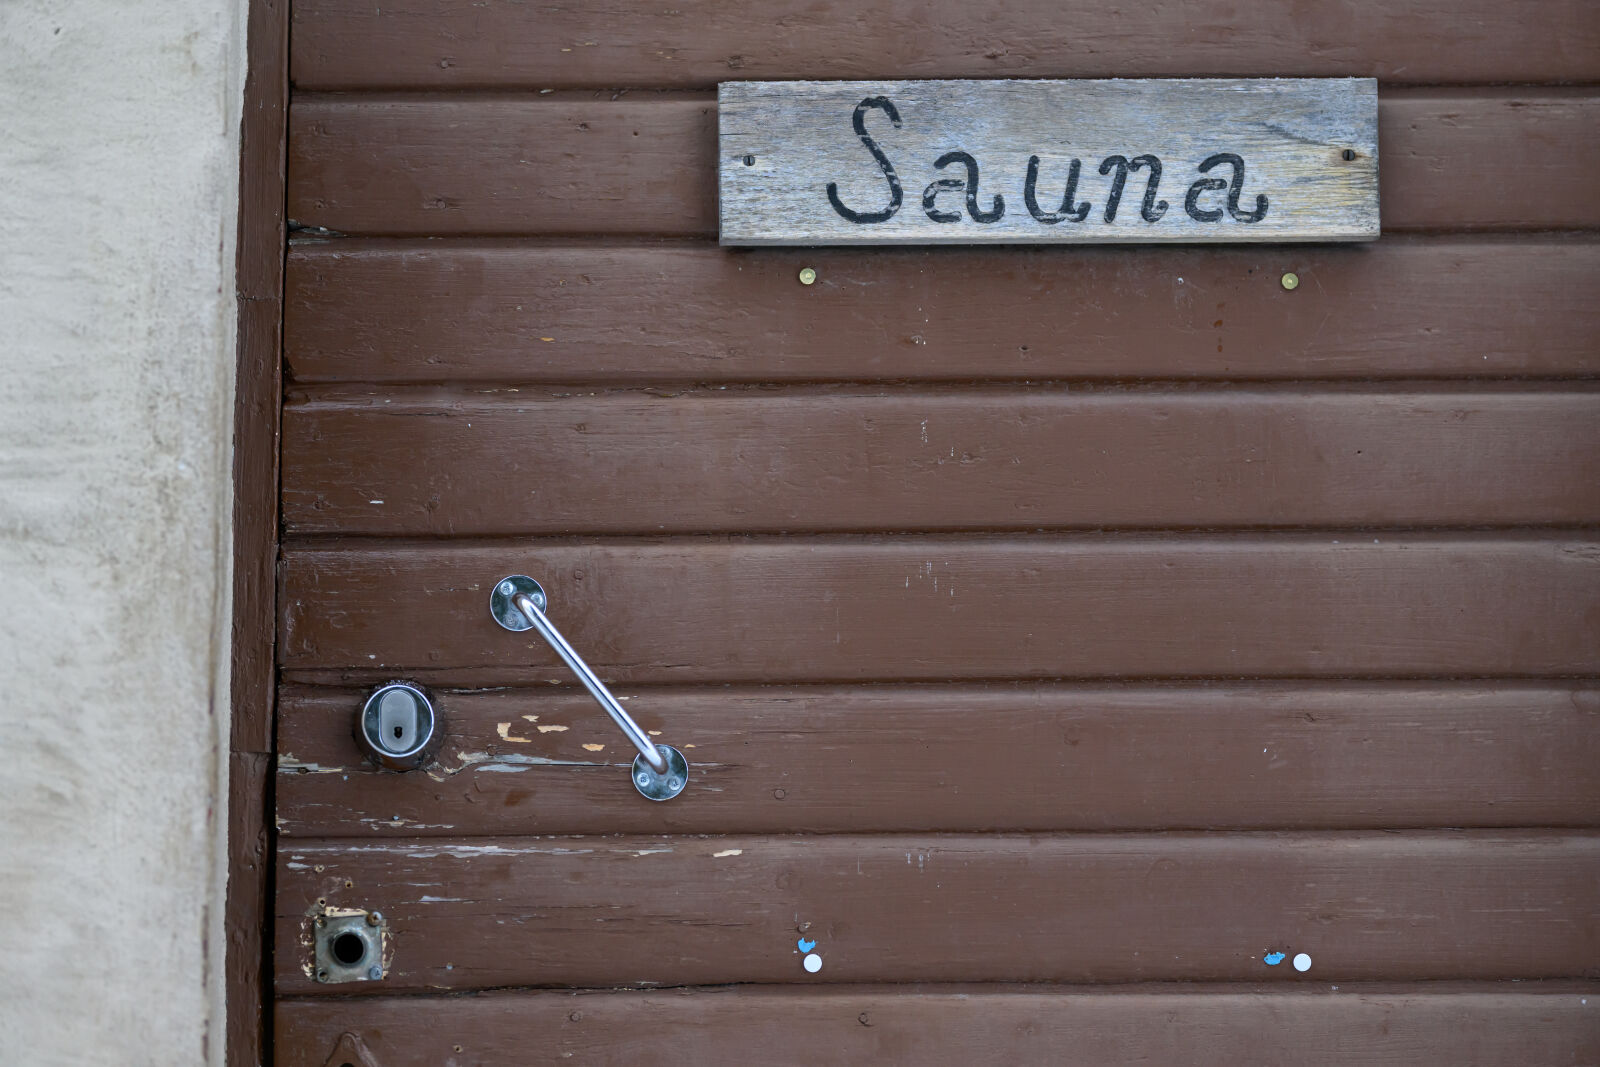 Nikon Z9 sample photo. Door to sauna photography